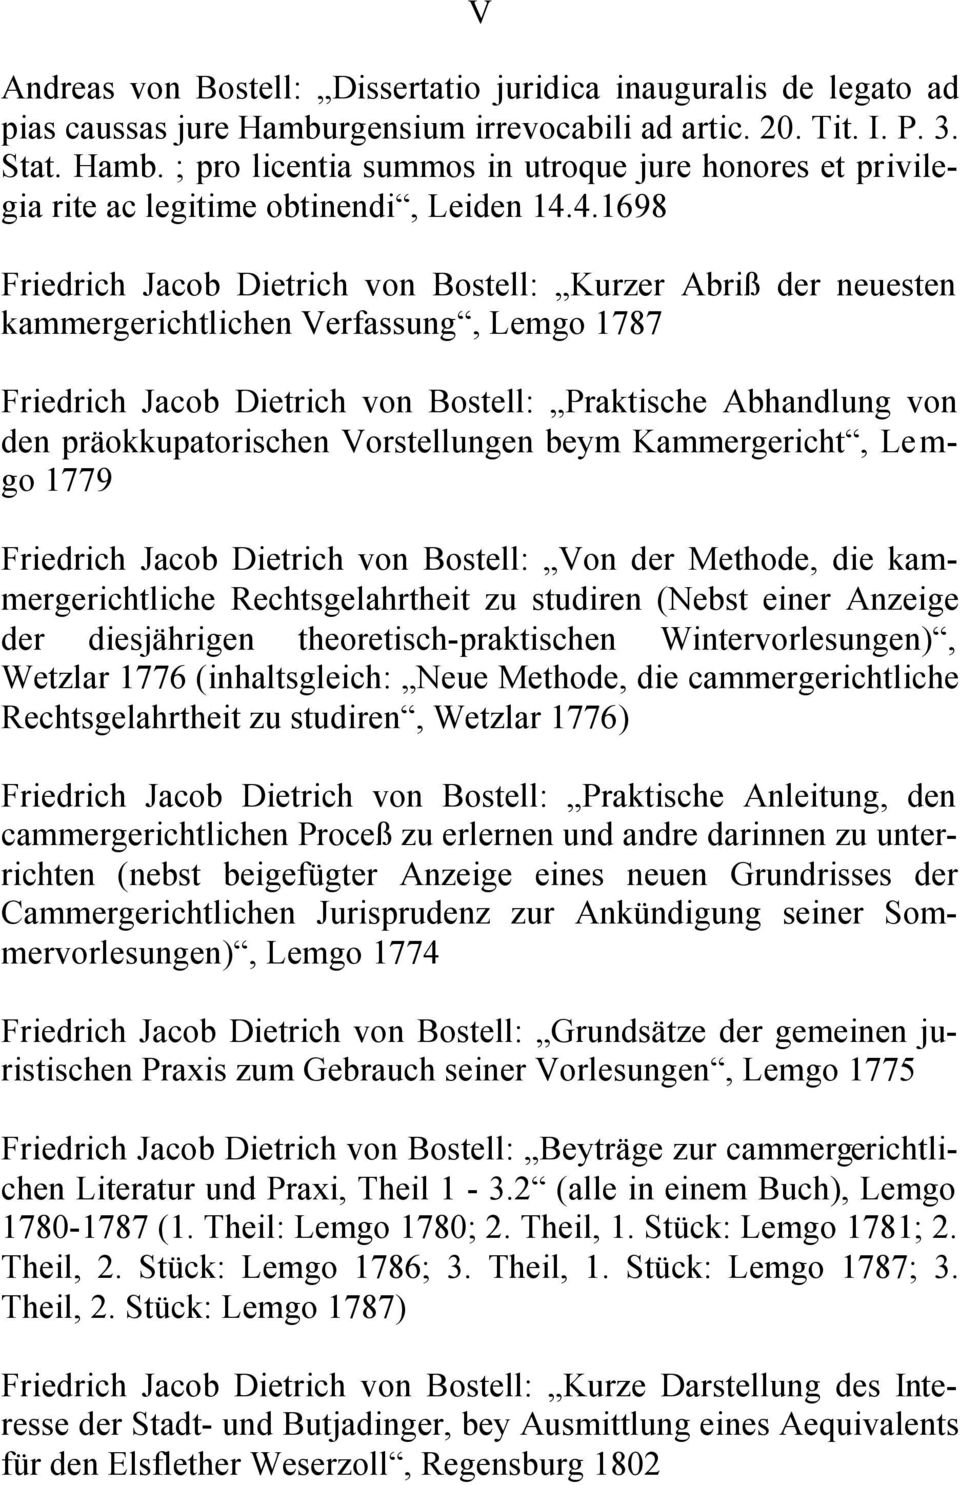 präokkupatorischen Vorstellungen beym Kammergericht, Lemgo 1779 Friedrich Jacob Dietrich von Bostell: Von der Methode, die kammergerichtliche Rechtsgelahrtheit zu studiren (Nebst einer Anzeige der